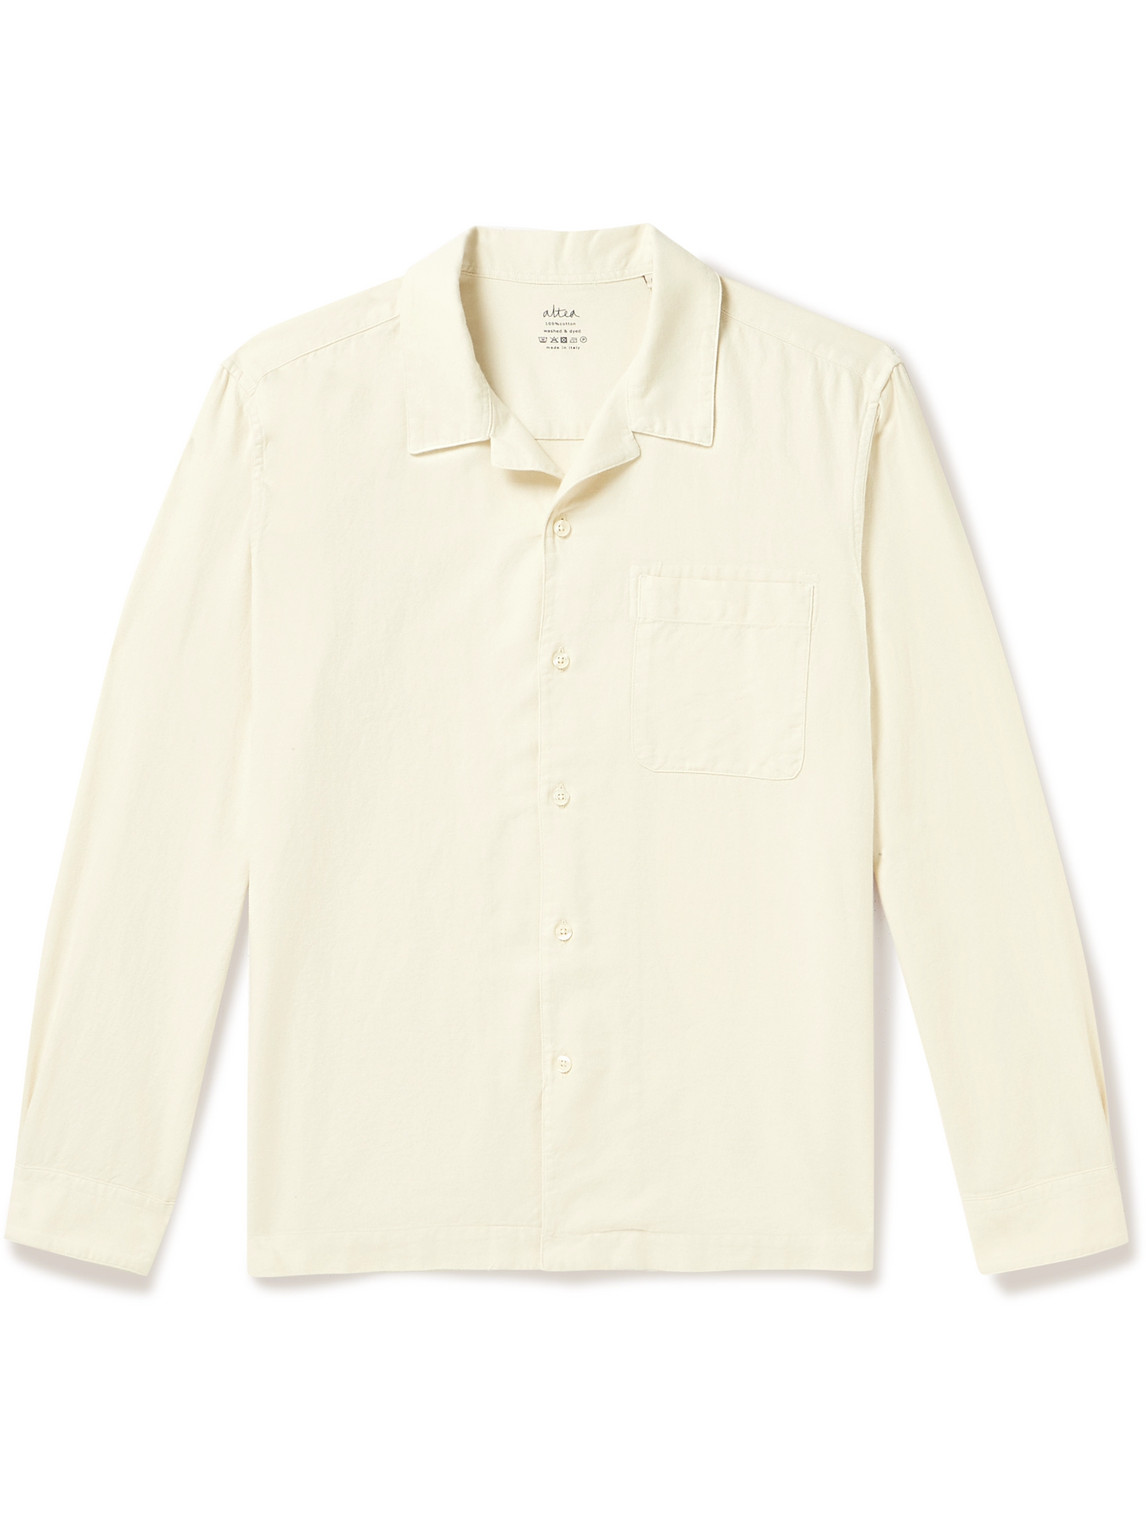 Altea - Luke Camp-Collar Garment-Dyed Cotton-Flannel Shirt - Men - Neutrals - S von Altea